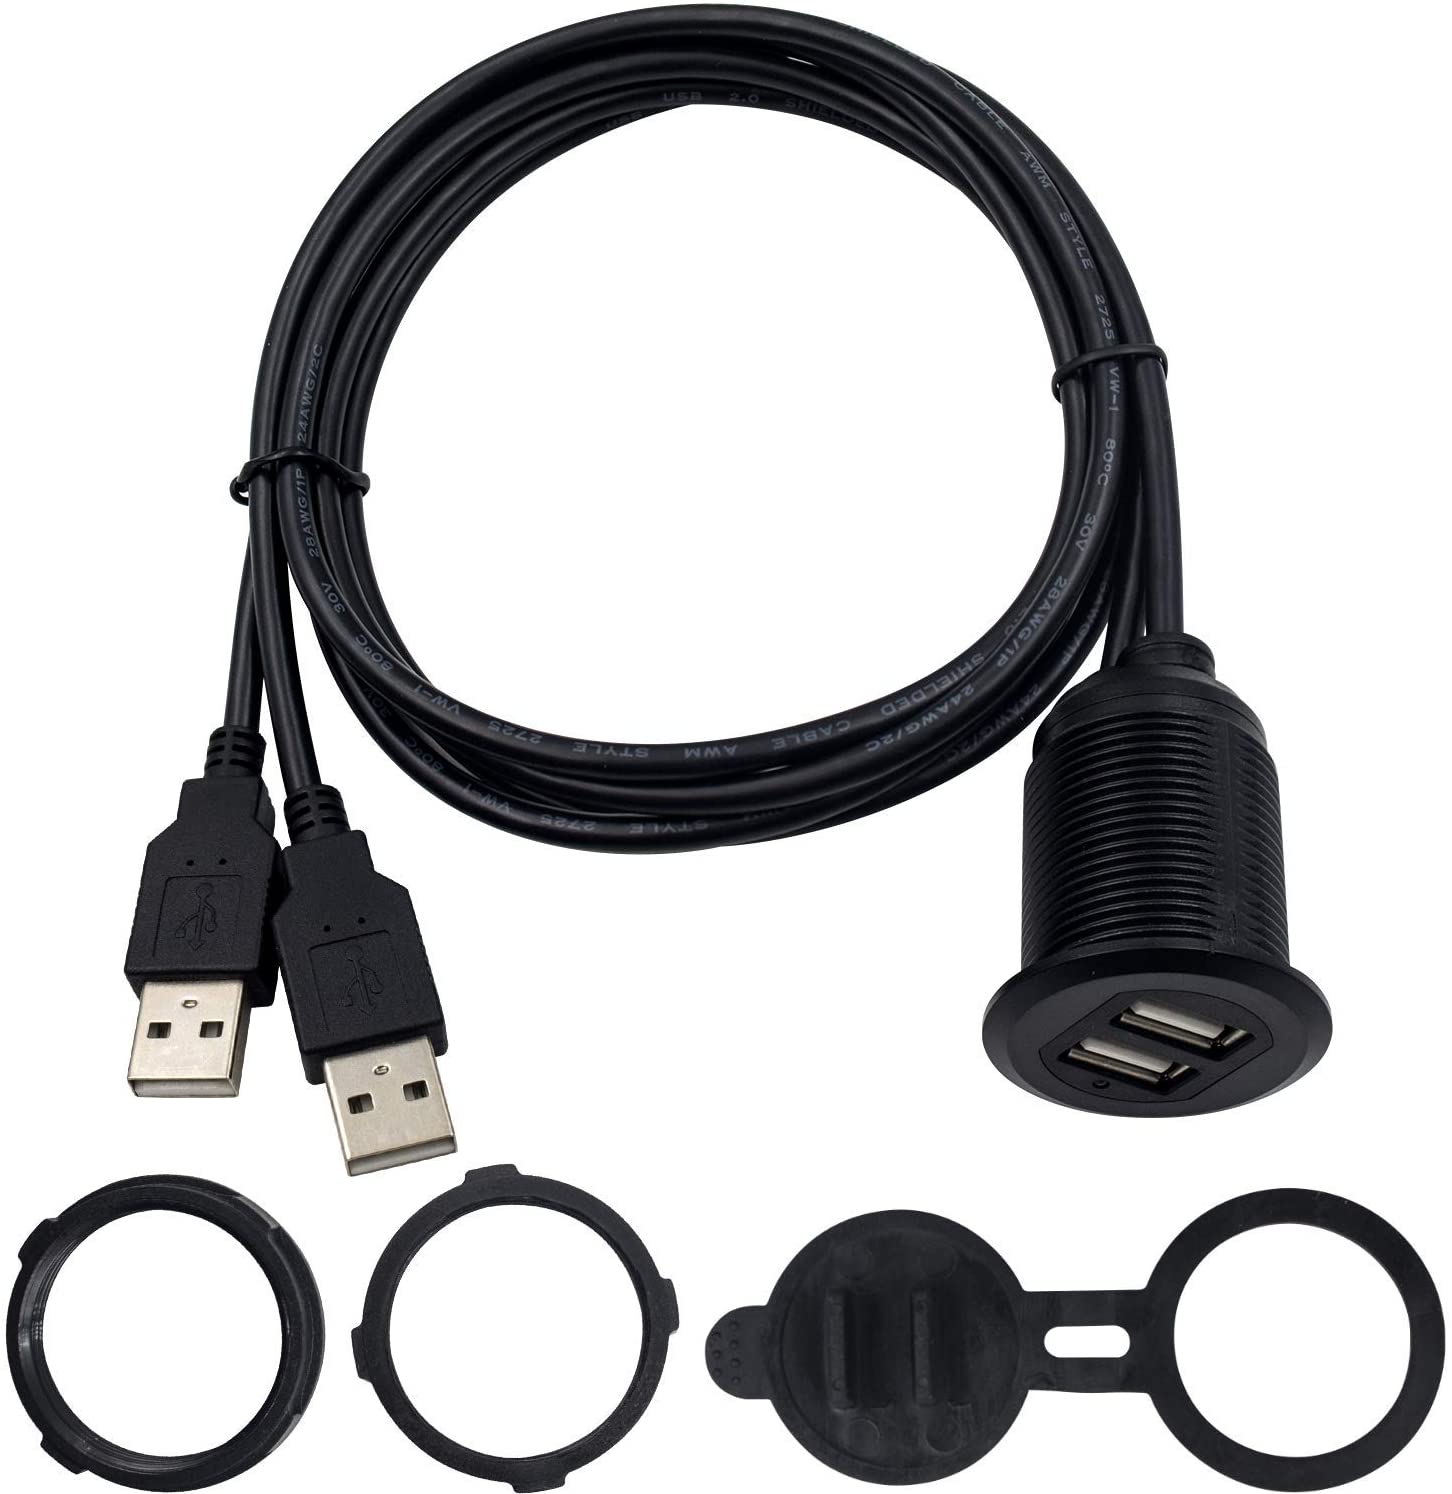 Cable de montaje empotrado para panel USB doble USB 2.0 macho a hembra cable de extensión montaje en salpicadero cable de montaje en panel para coche, barco, motocicleta 3.3 ft